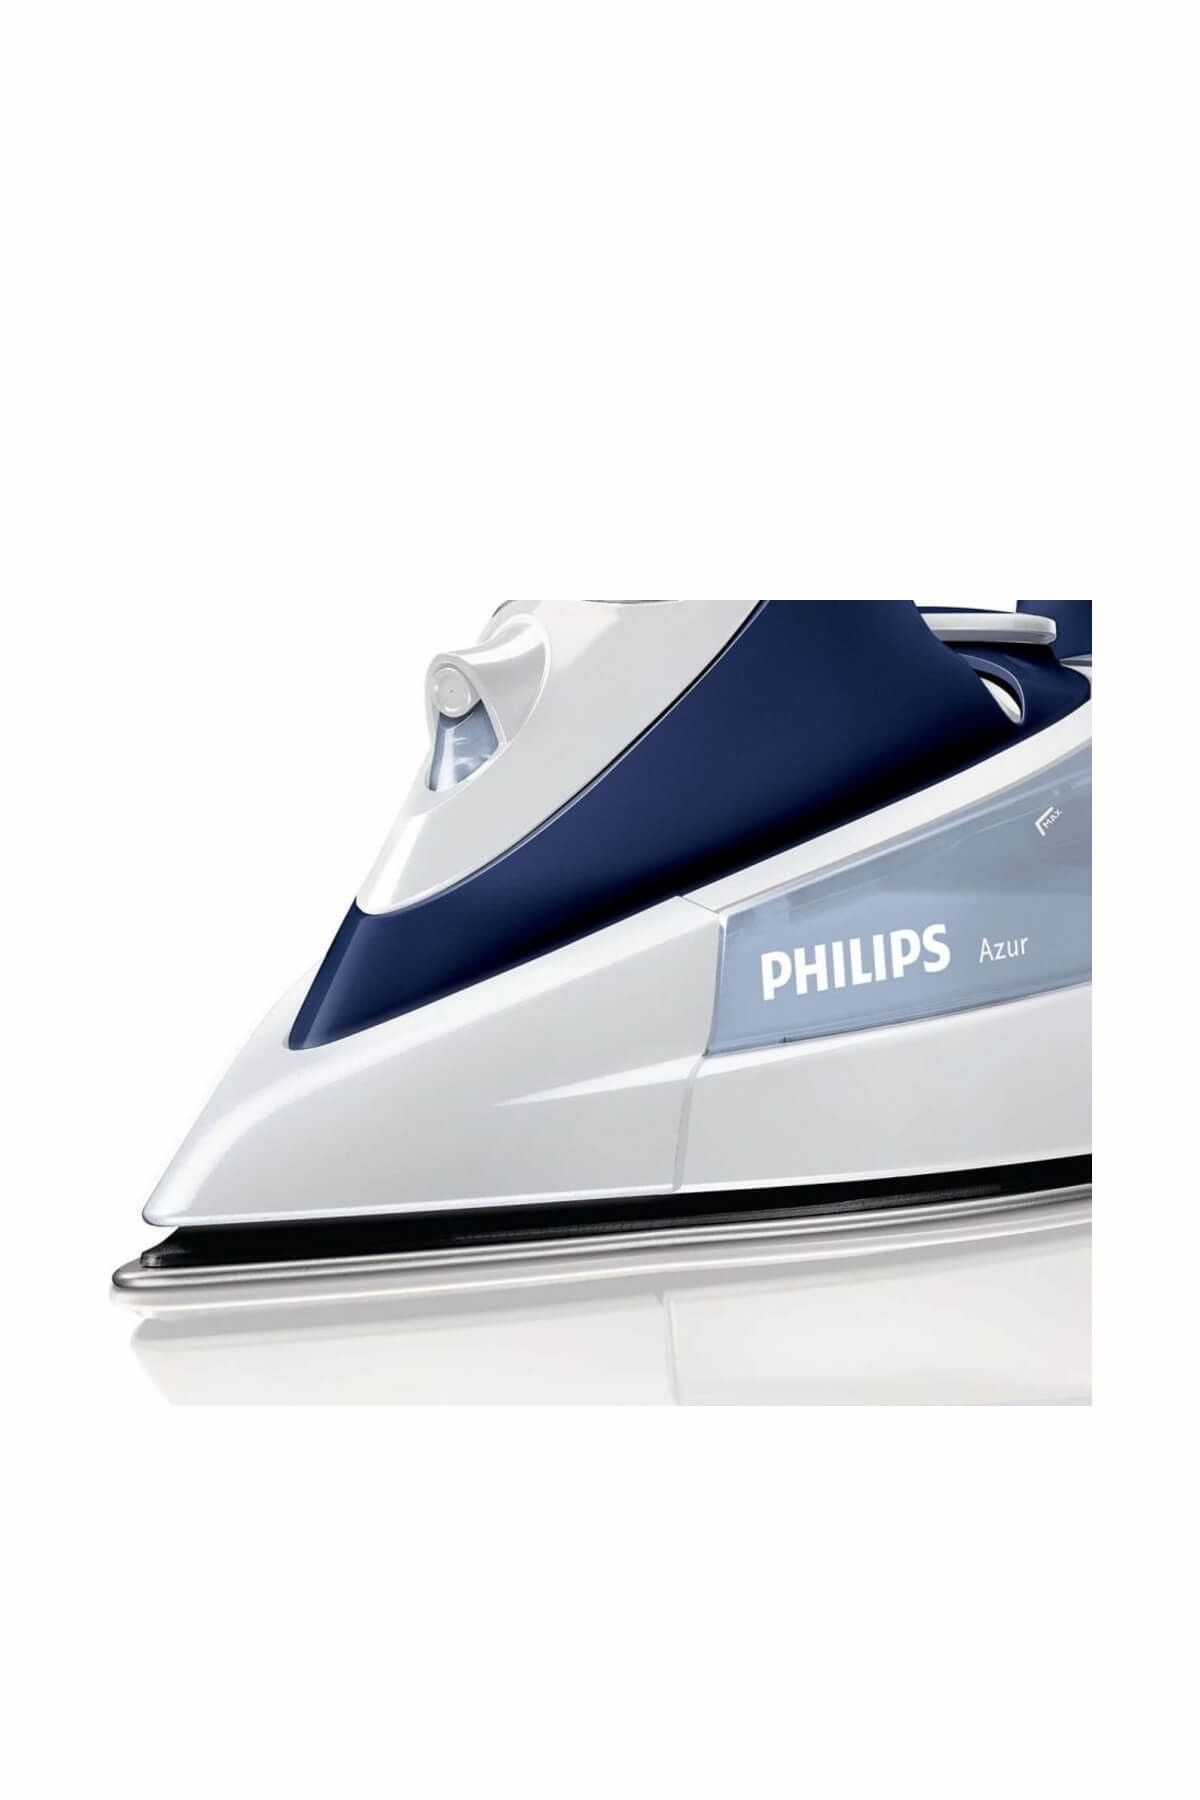 Philips Azur GC4410/22 2400W SteamGlide Tabanlı Buharlı Ütü